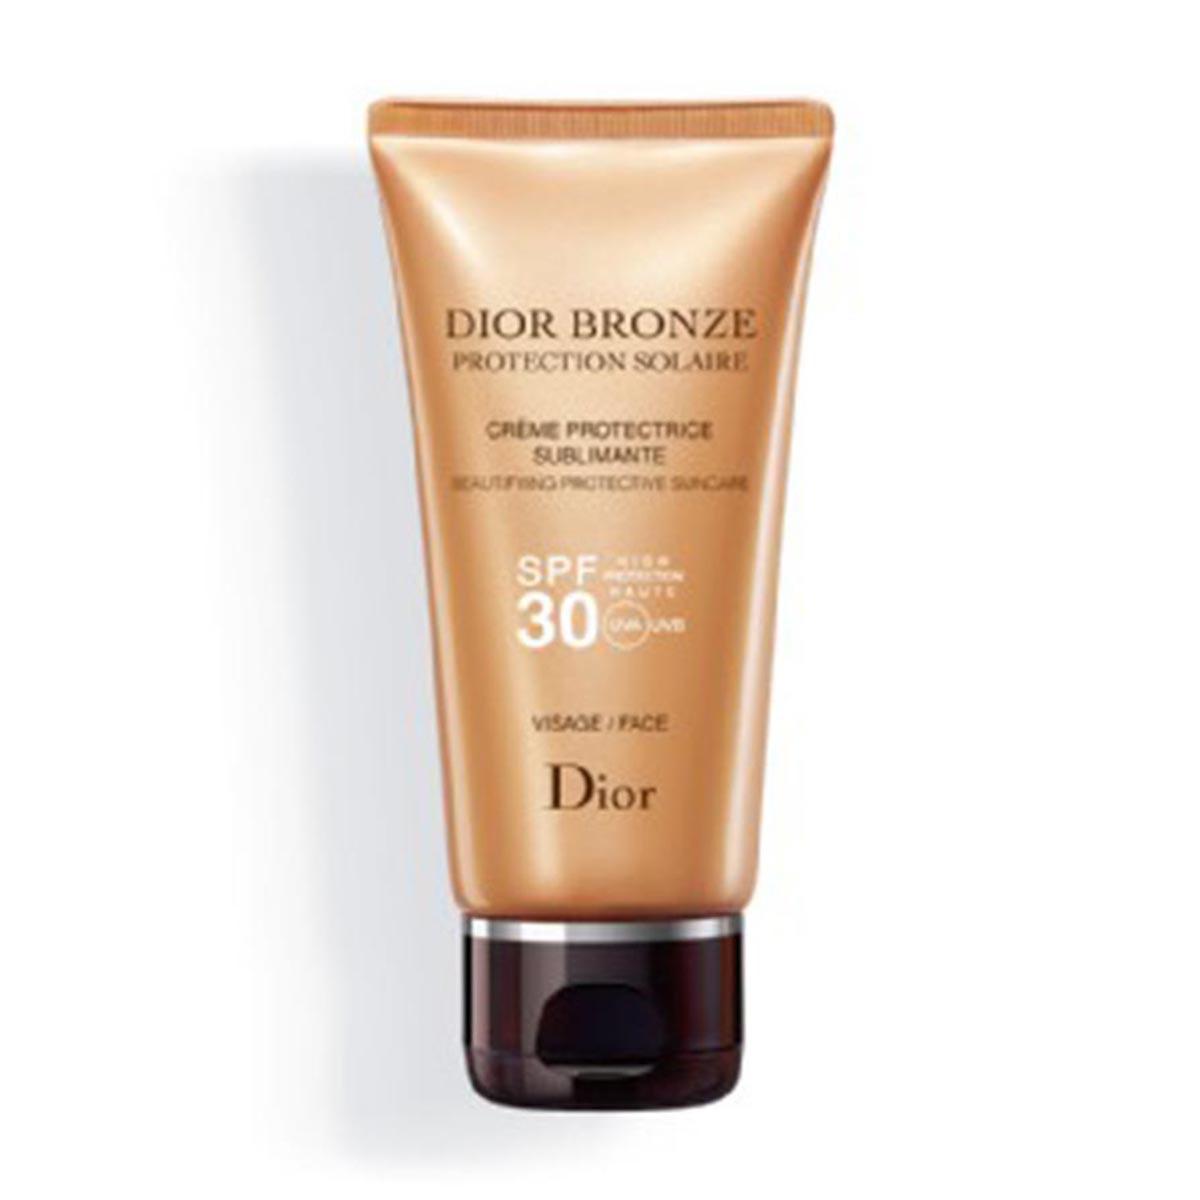 Dior Bronze Protective Creme Sublime Face Spf30 50ml, Golden | Bikeinn